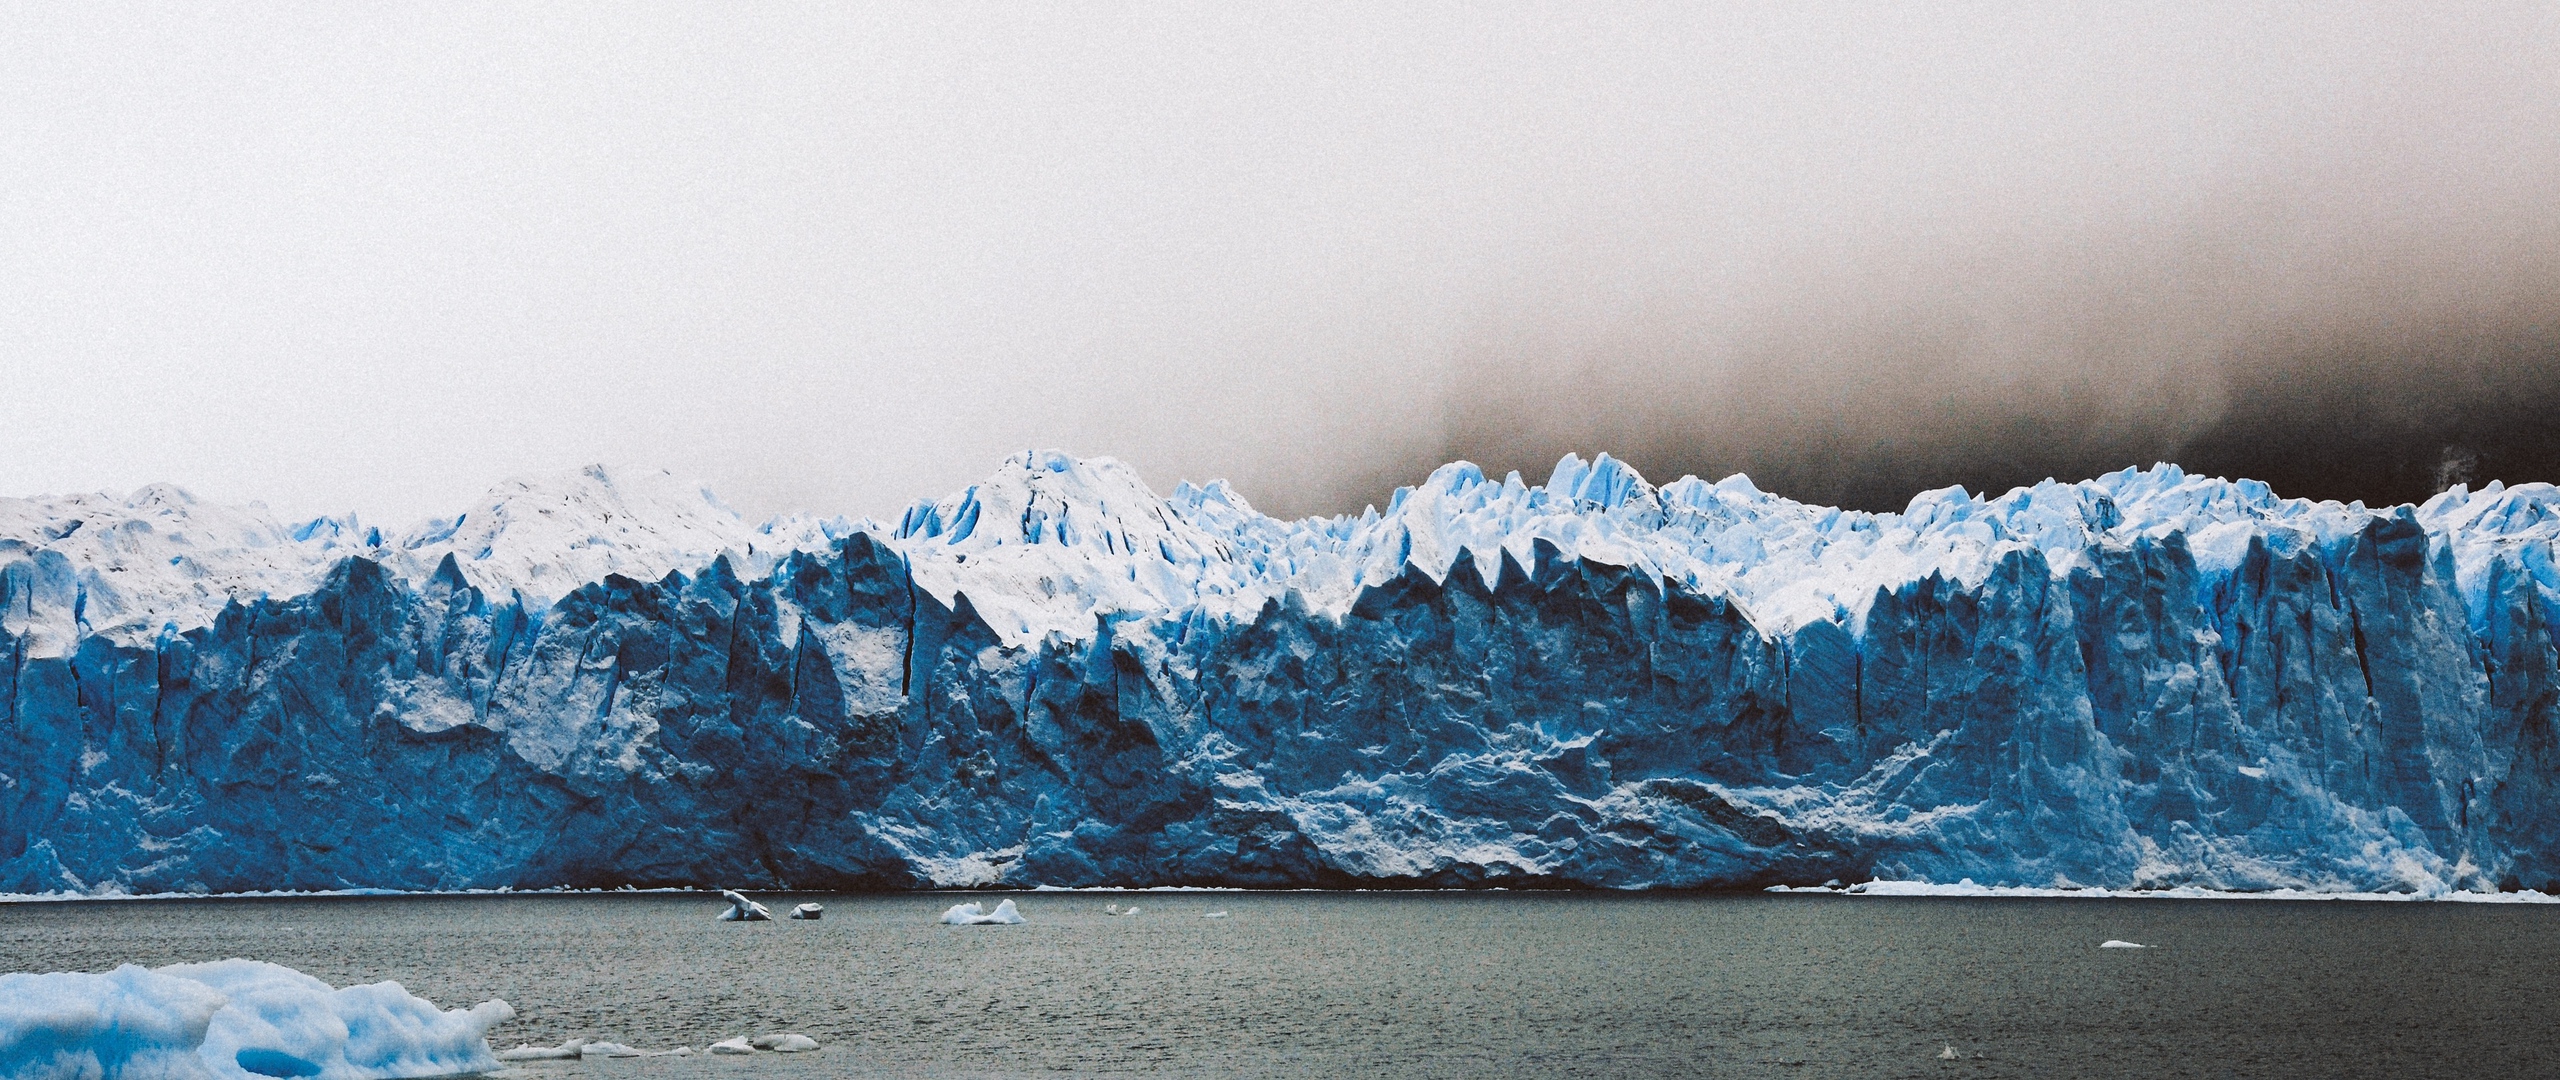 Download wallpaper 2560x1080 perito moreno glacier, glacier, los